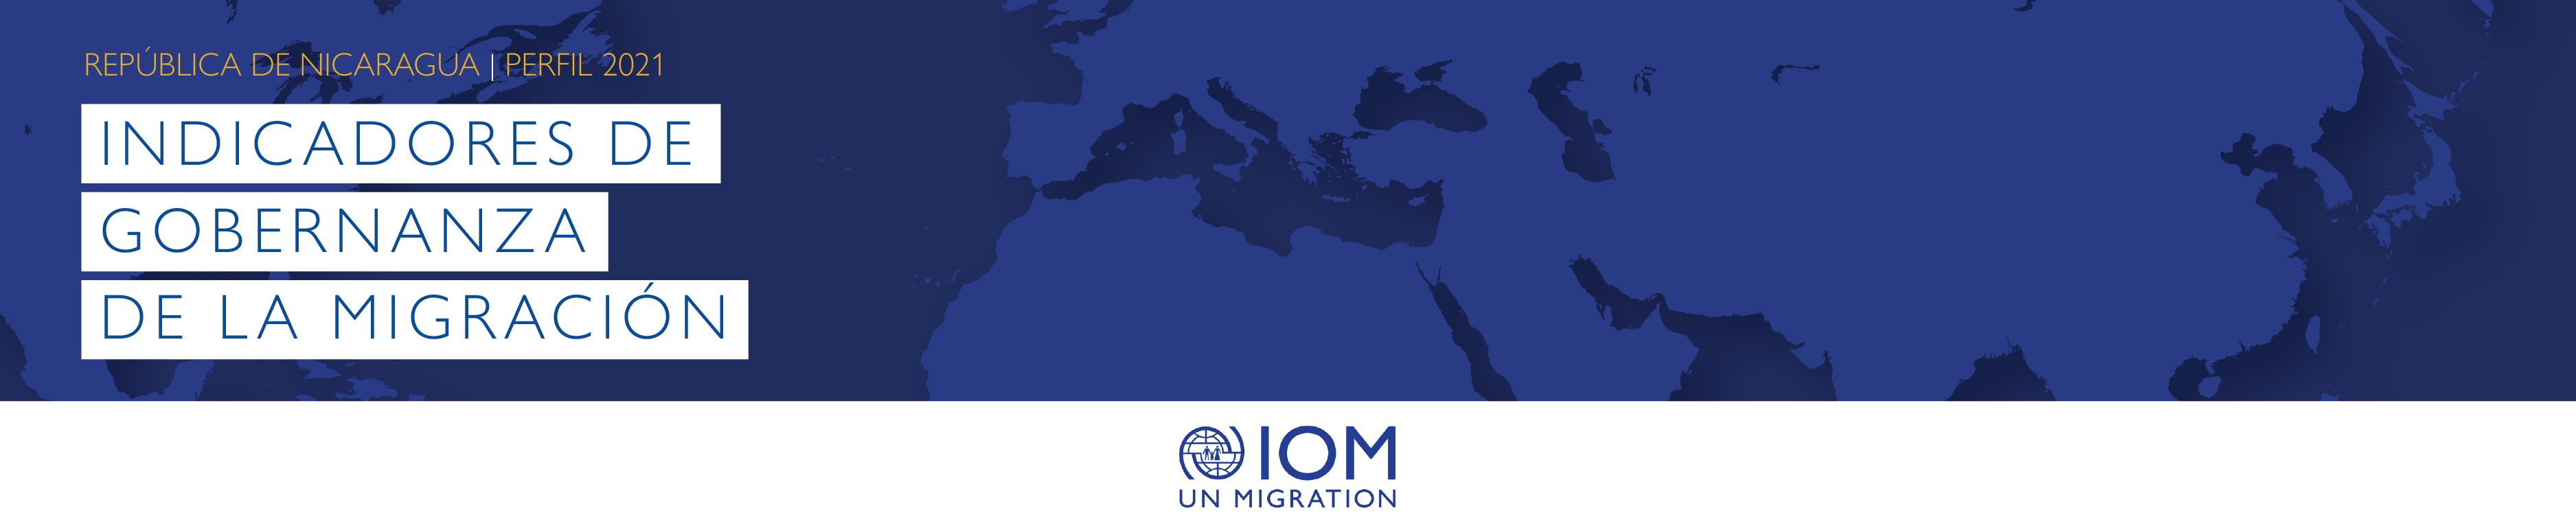 Indicadores de Gobernanza de la Migración Perfil 2021 | República de Nicaragua